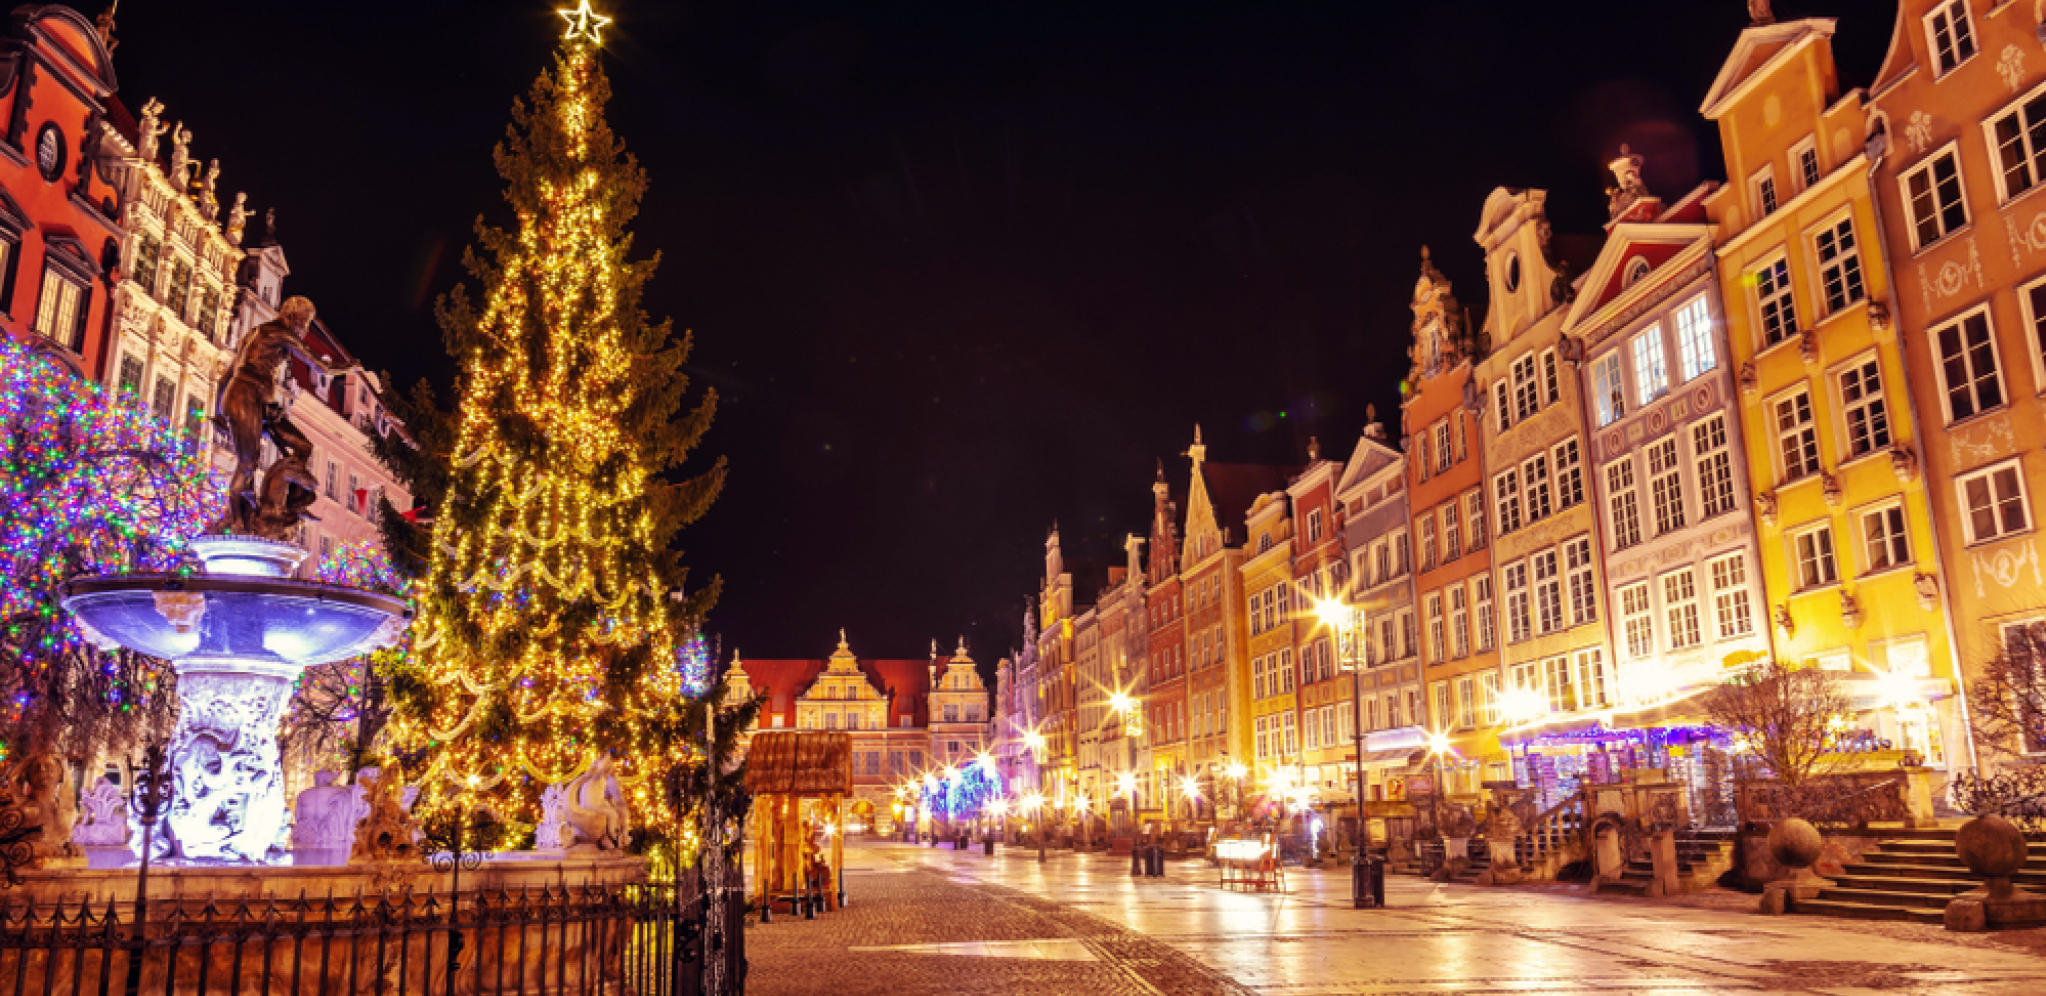 PRVI PUT U Kijevu postavljena božićna jelka prema novom kalendaru